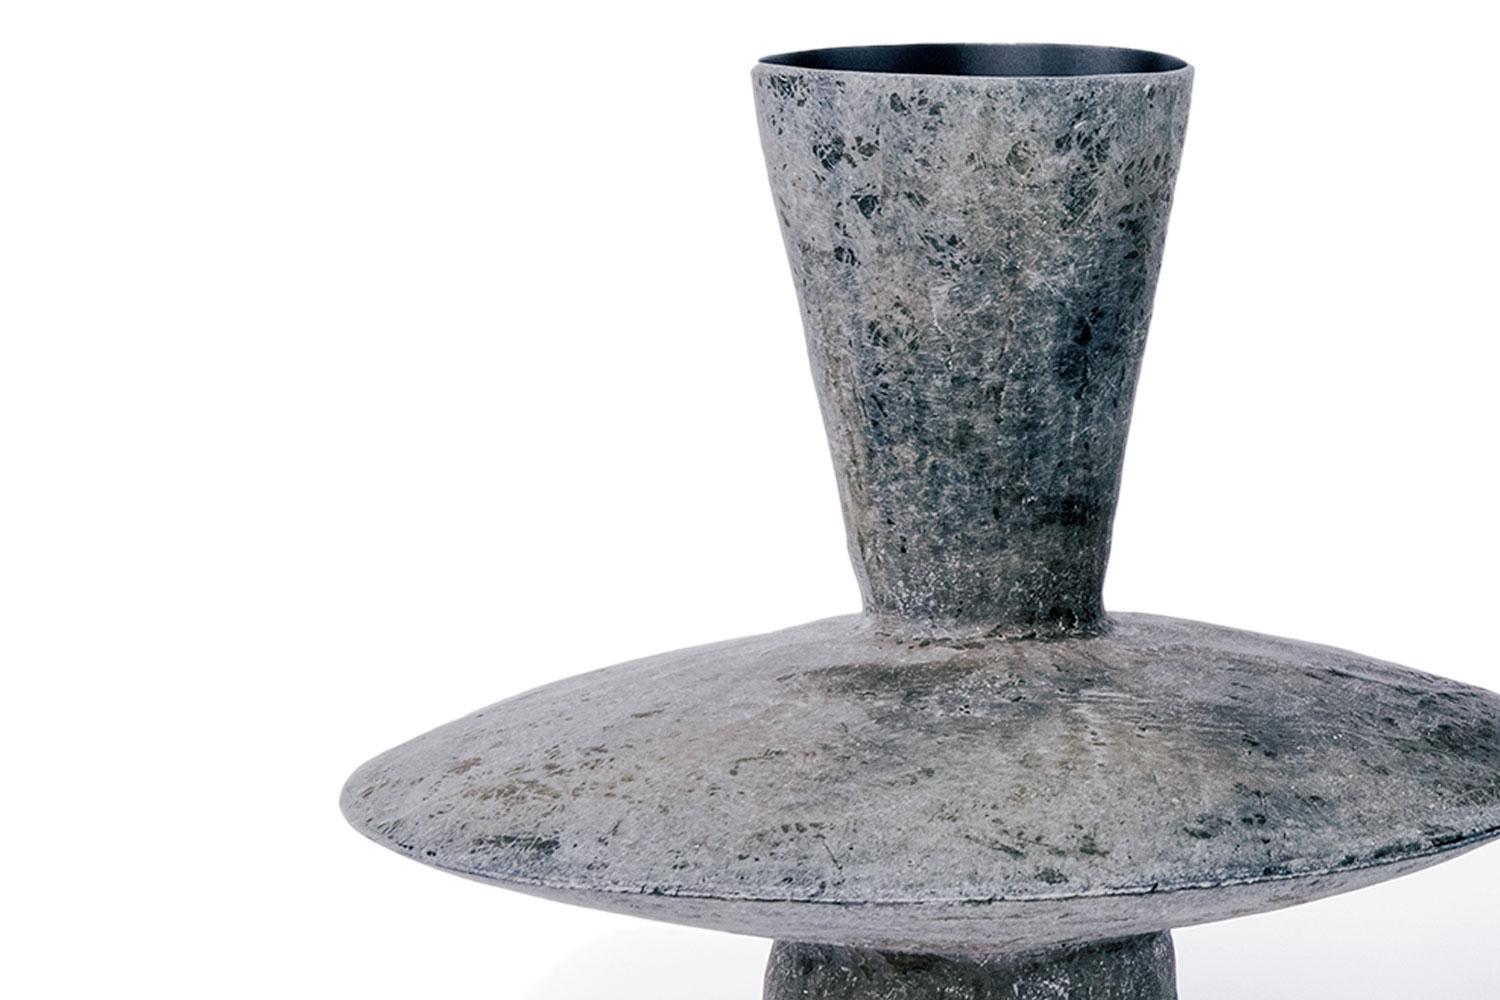 Echo Low von Imperfetto

Hergestellt aus Fiberglas mit einer rohen Außenseite und einem schwarzen, glatten Innenbecken. Das Design aus eigenartigen Geometrien macht diese Vase zu einem einzigartigen Objekt mit unverwechselbarem Charakter. Das hohe